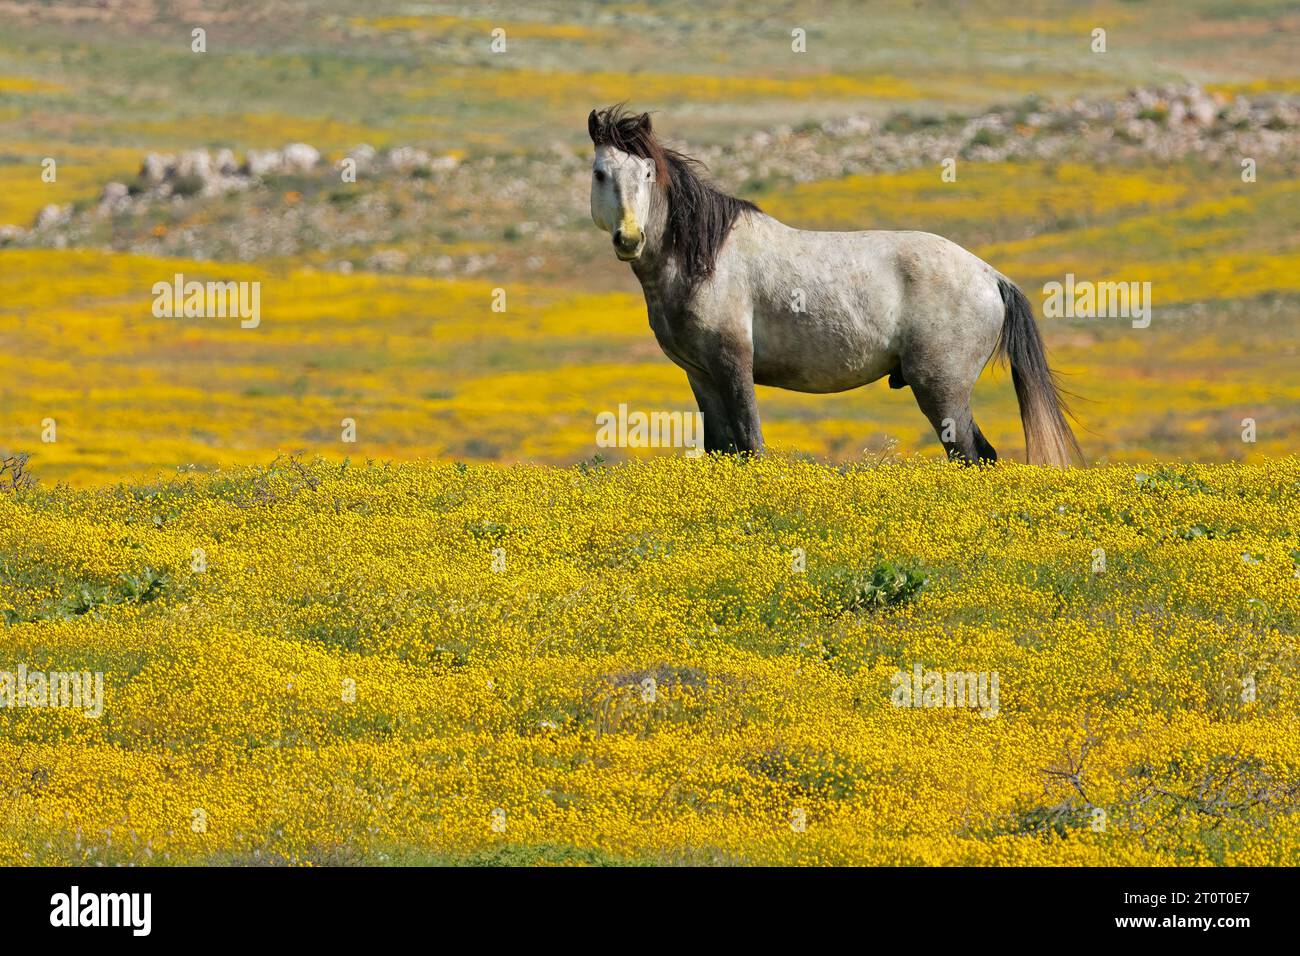 Un cheval en liberté debout dans un champ aux fleurs sauvages jaunes, Namaqualand, Afrique du Sud Banque D'Images